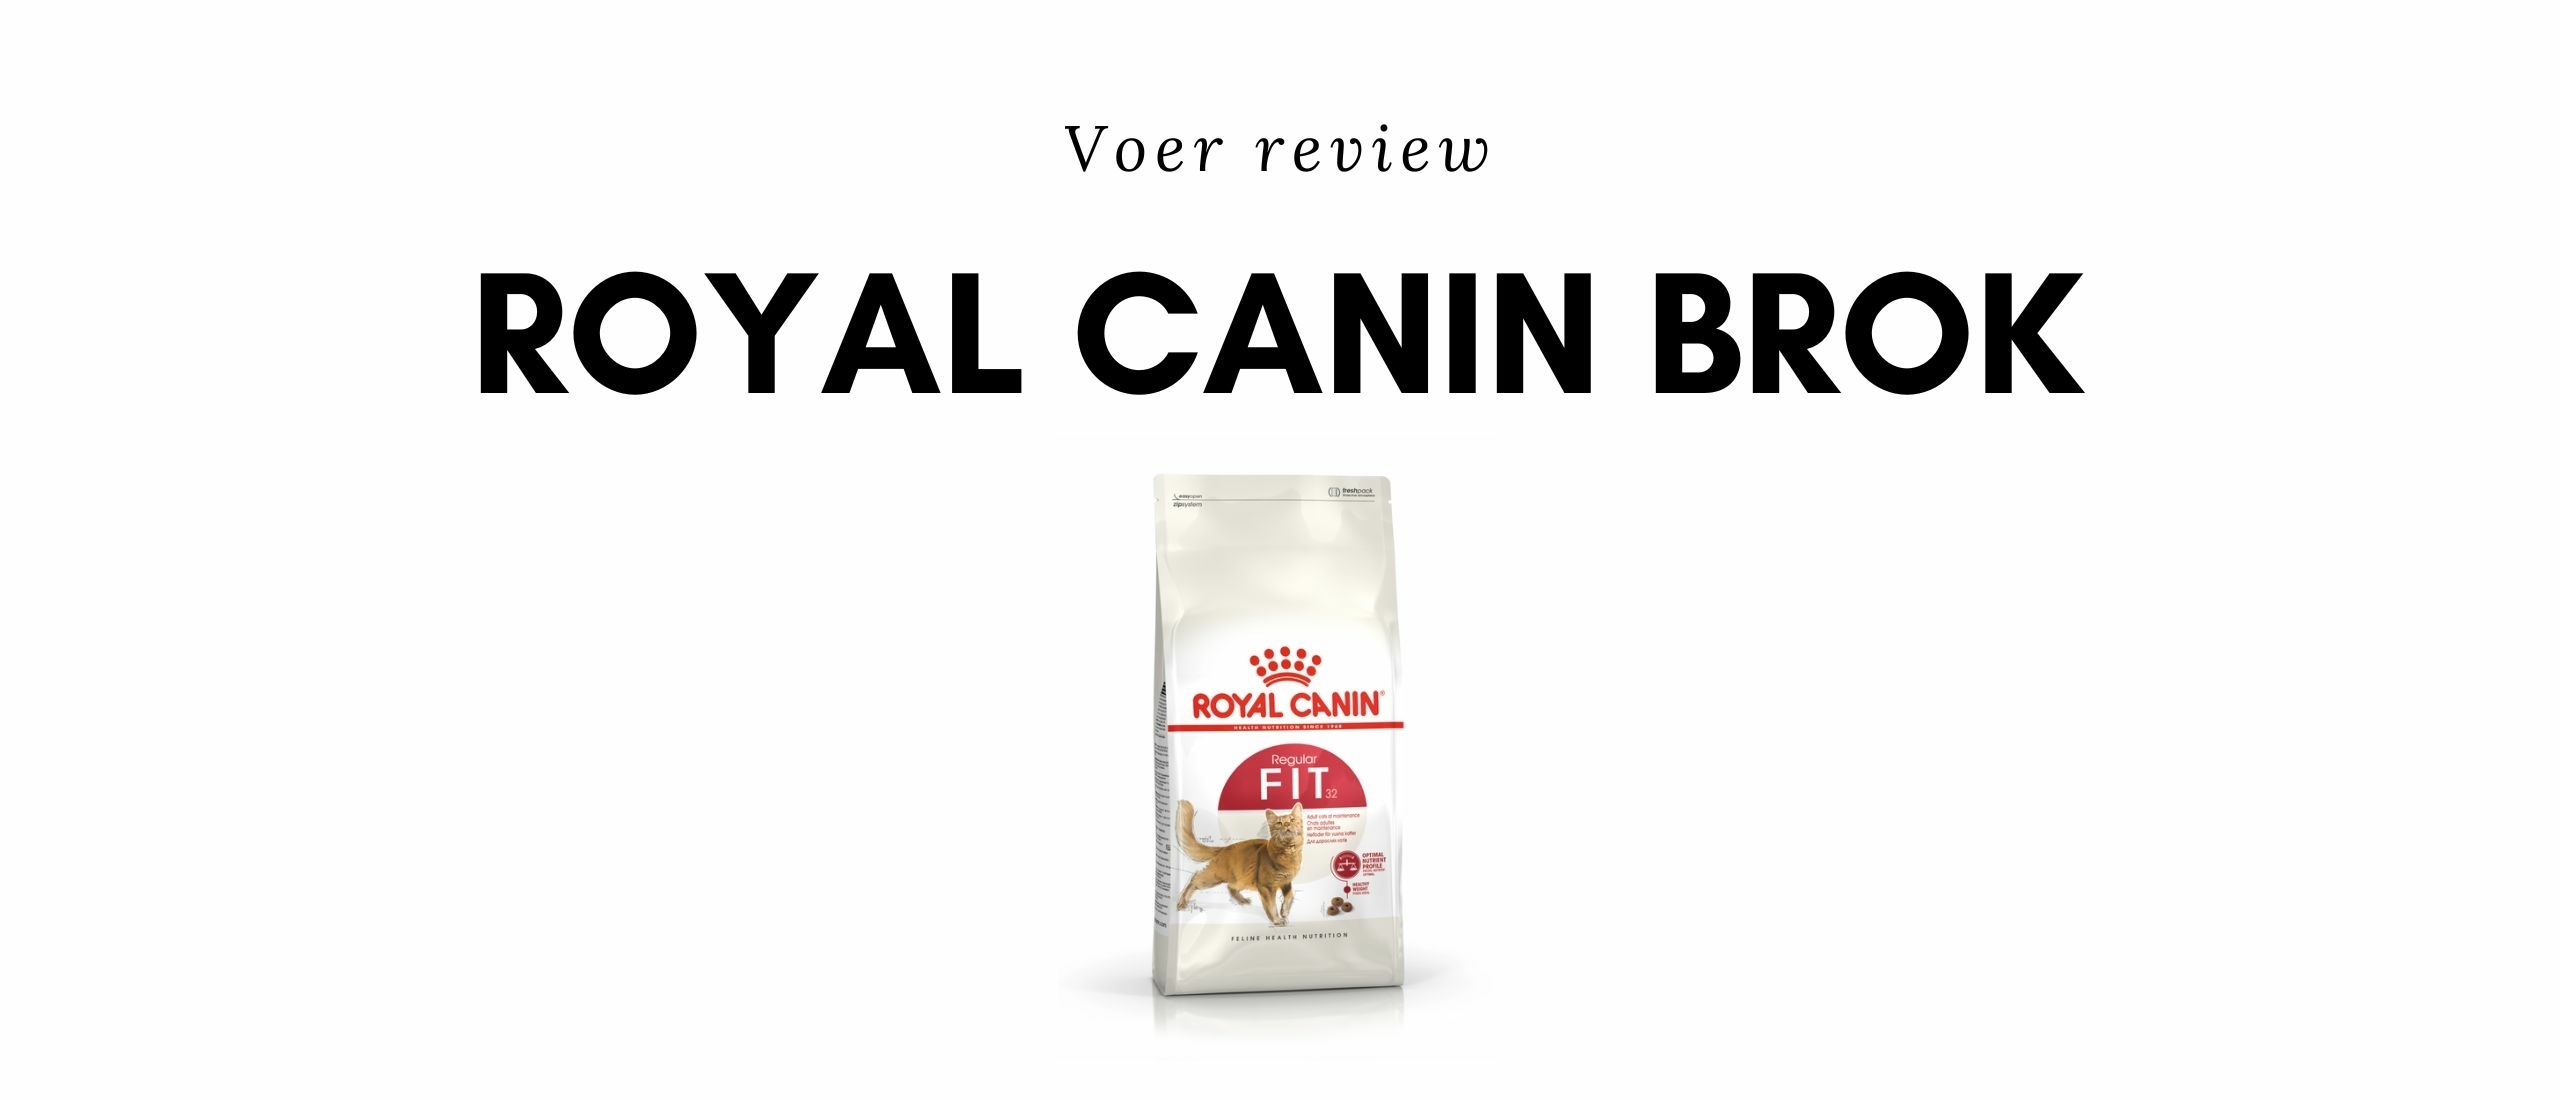 35 Royal Canin kattenbrokken geanalyseerd: Is Royal Canin een goede kattenbrok?